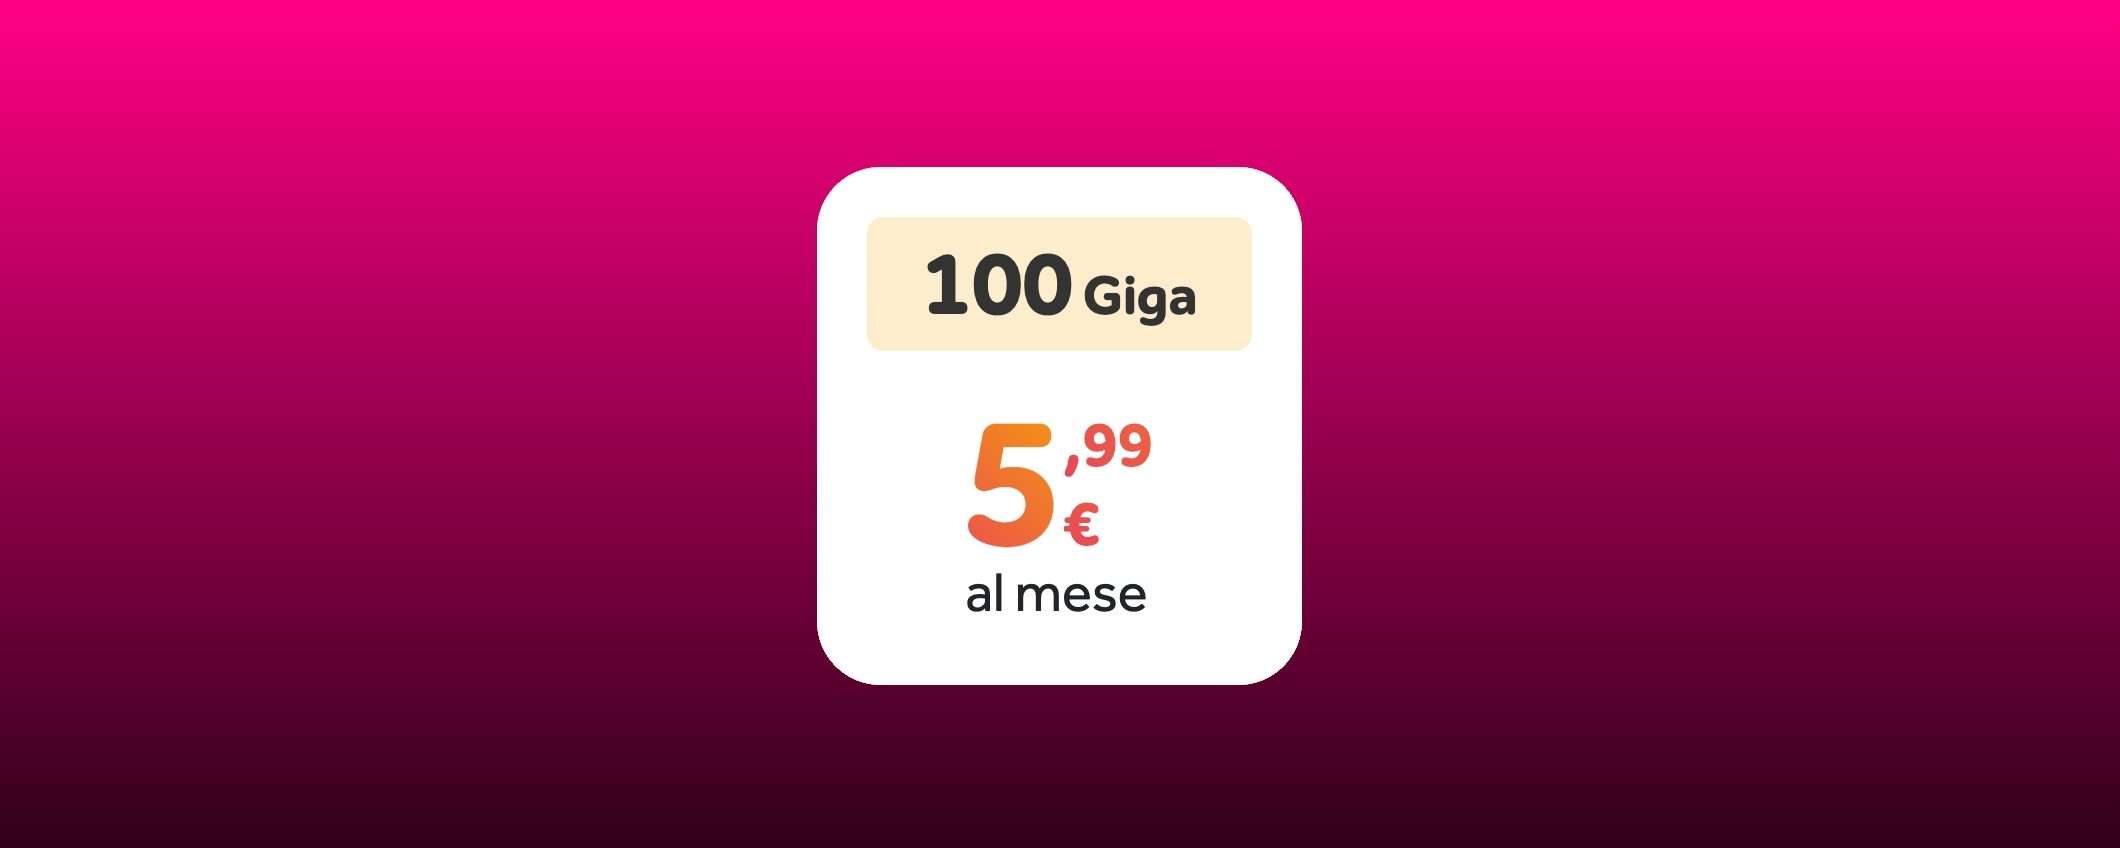 Ho Mobile 100GB: promo BOMBA a meno di 6€ al mese